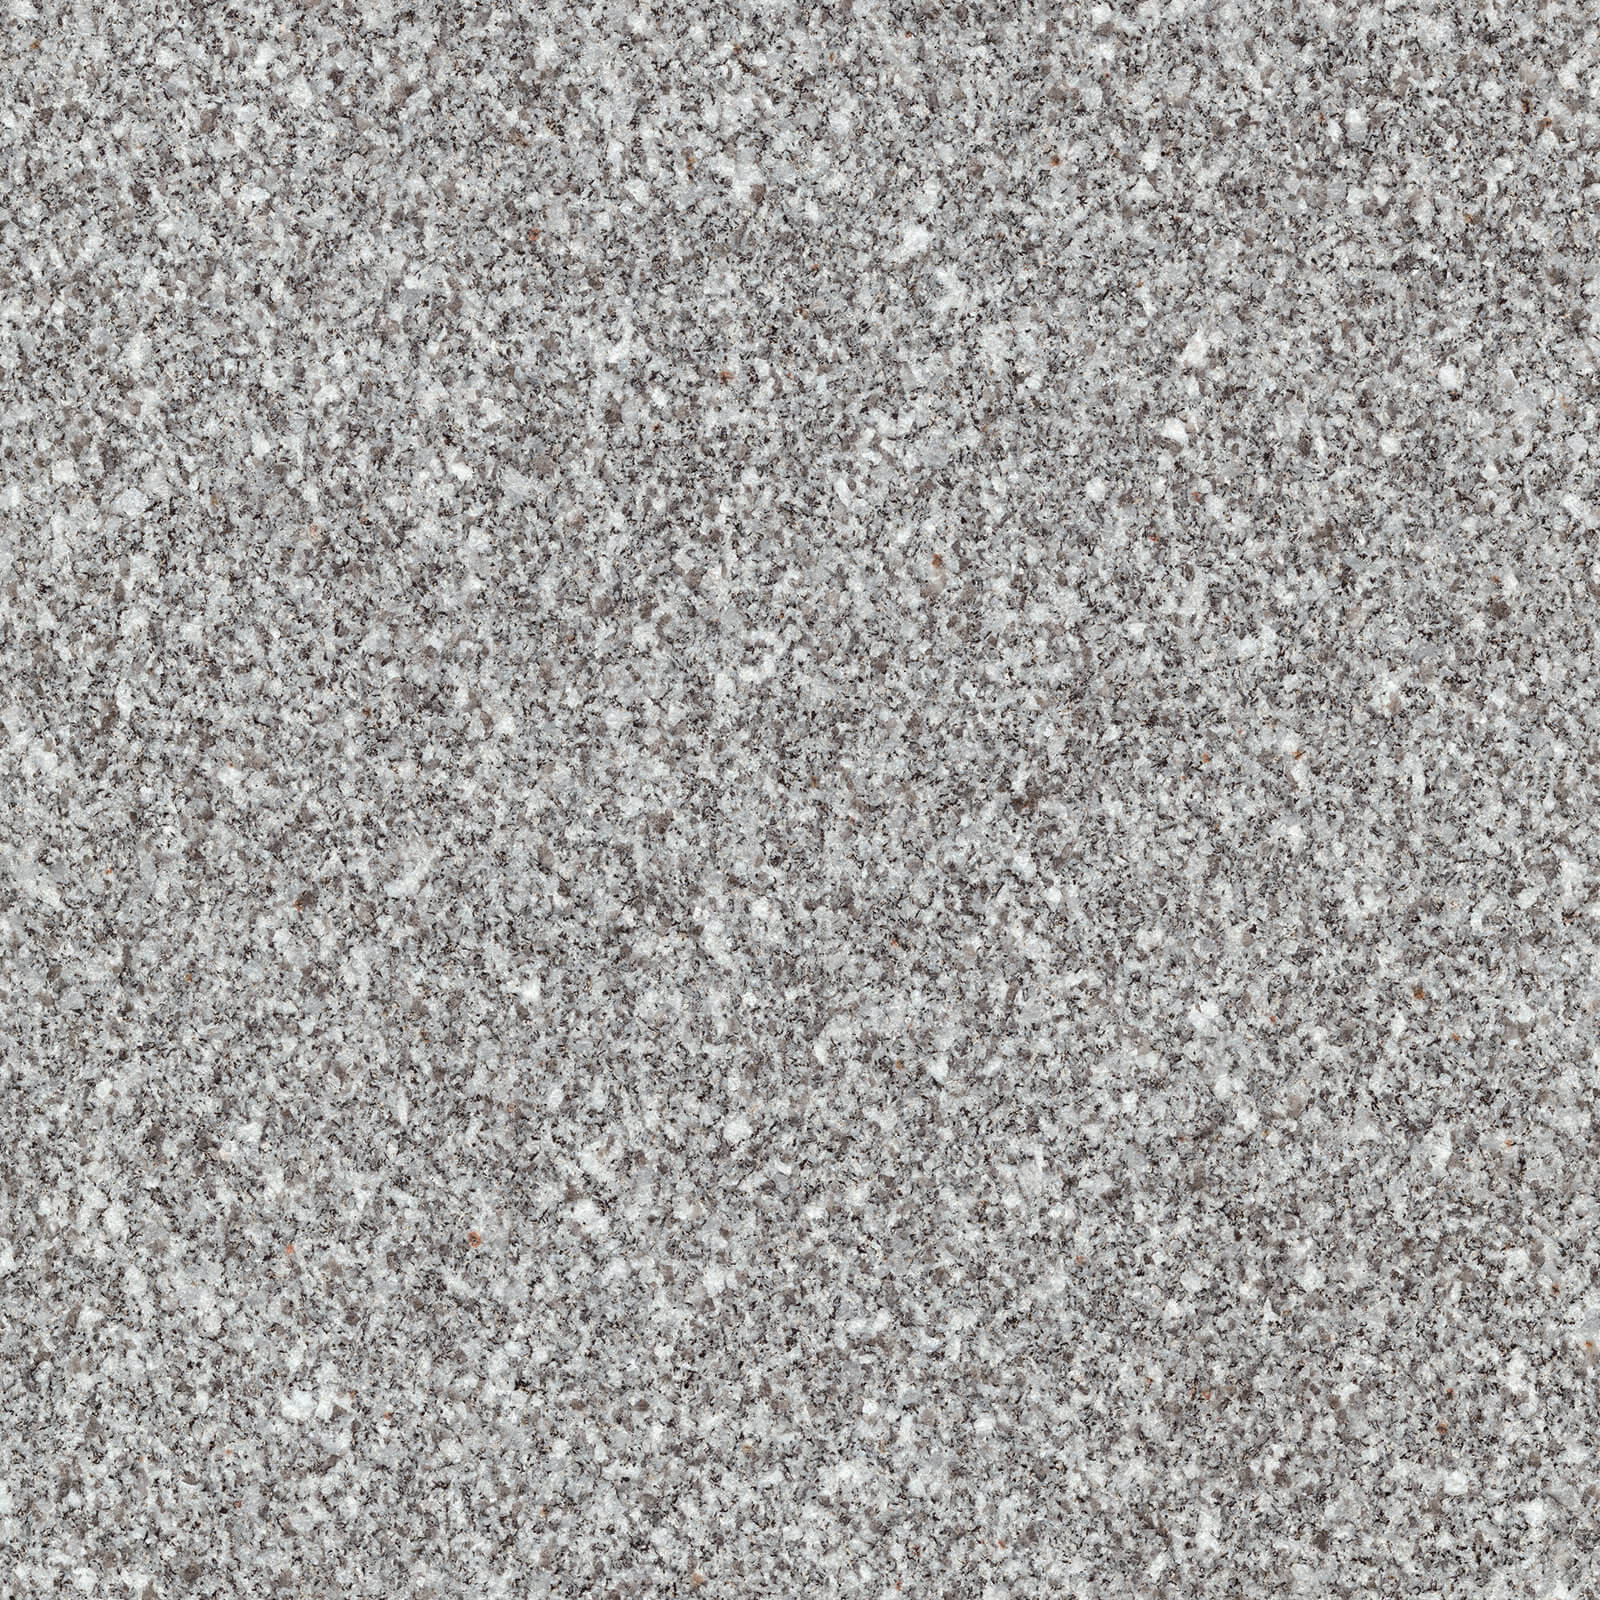 Barre Gray Polycor Natural Stone North America Granite